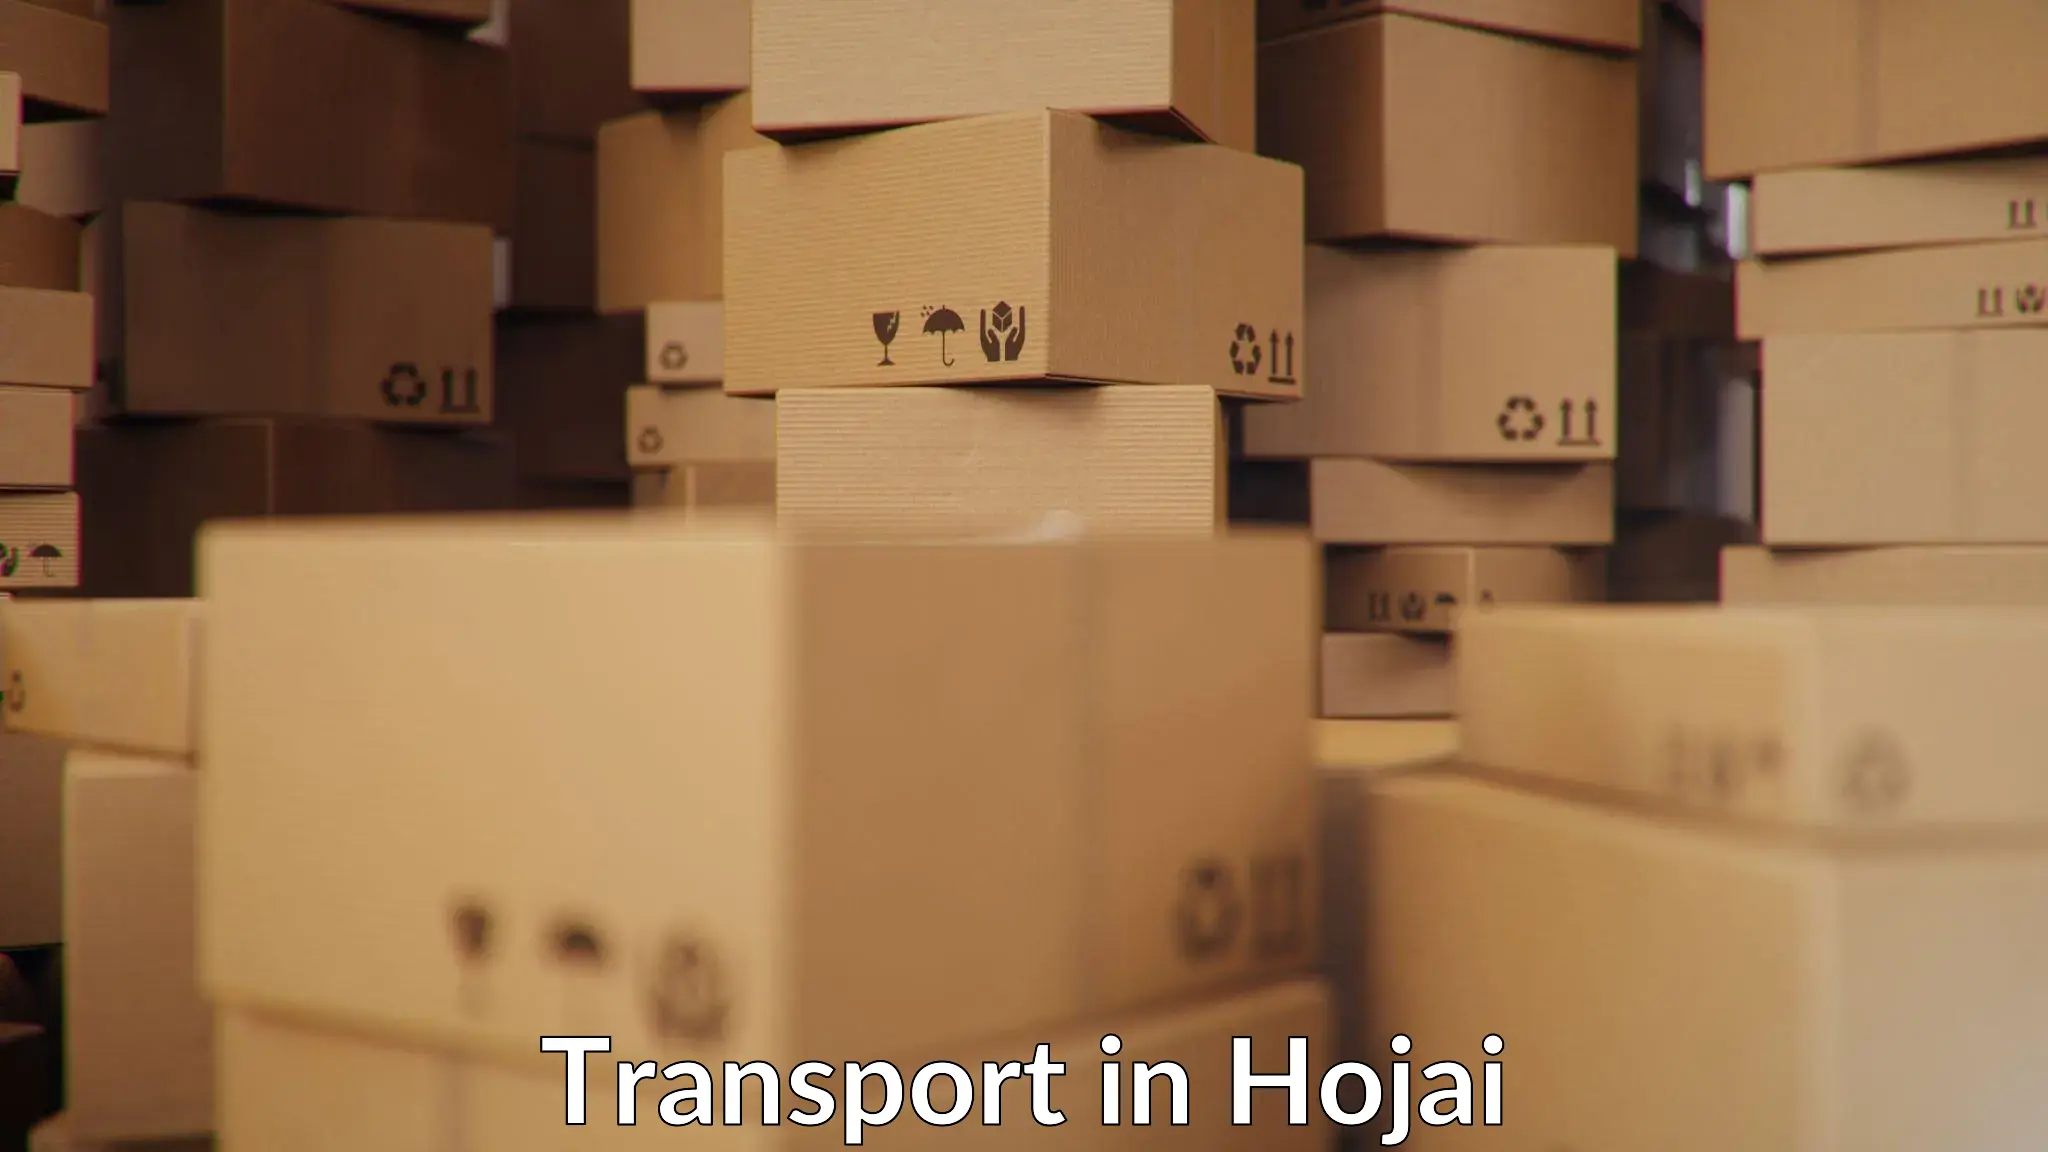 Intercity goods transport in Hojai